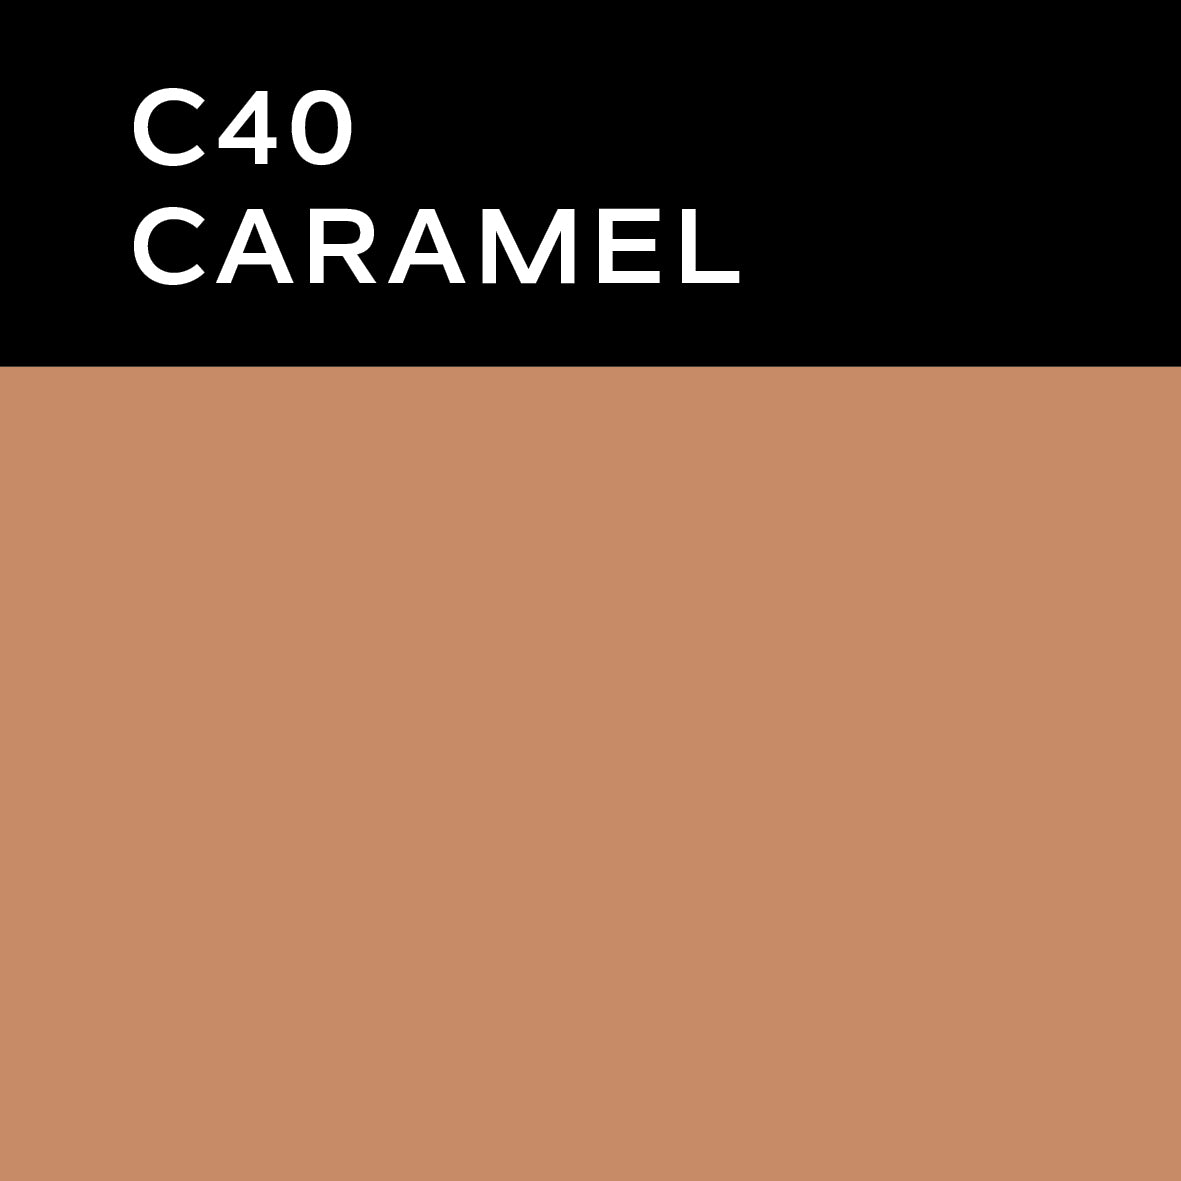 Farge C40 Caramel. foto